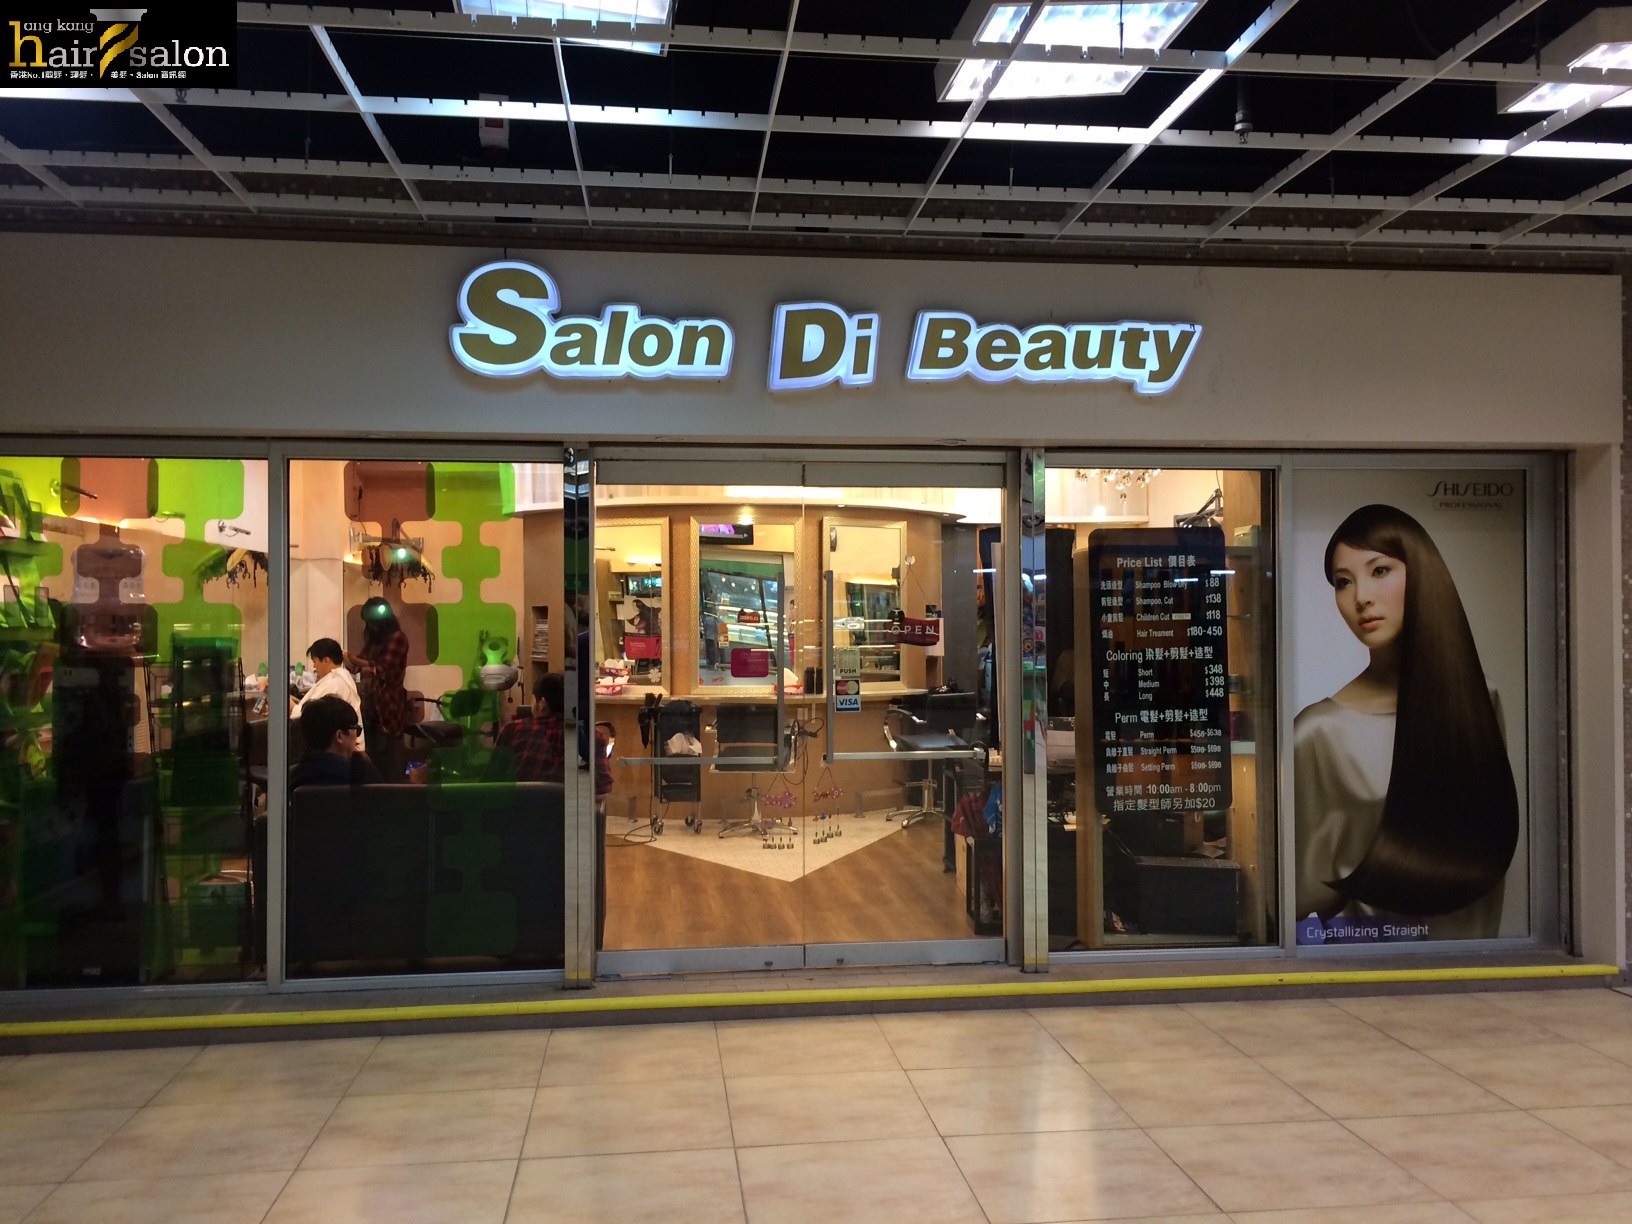 髮型屋: Salon Di Beauty 集美軒髮廊 (龍蟠苑商場)